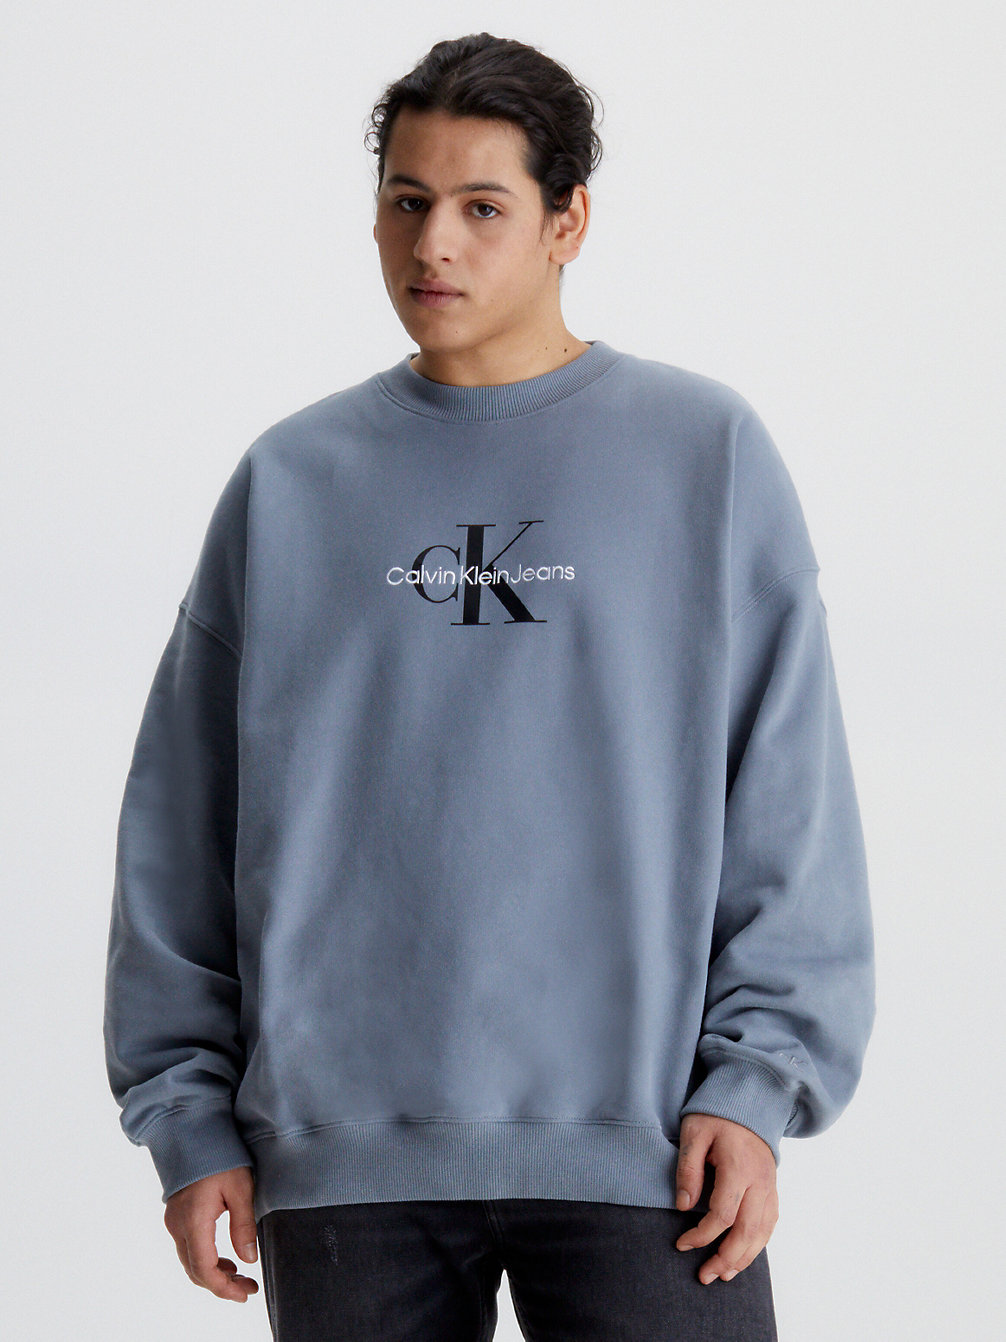 OVERCAST GREY > Monogramm-Sweatshirt In Großen Größen > undefined men - Calvin Klein